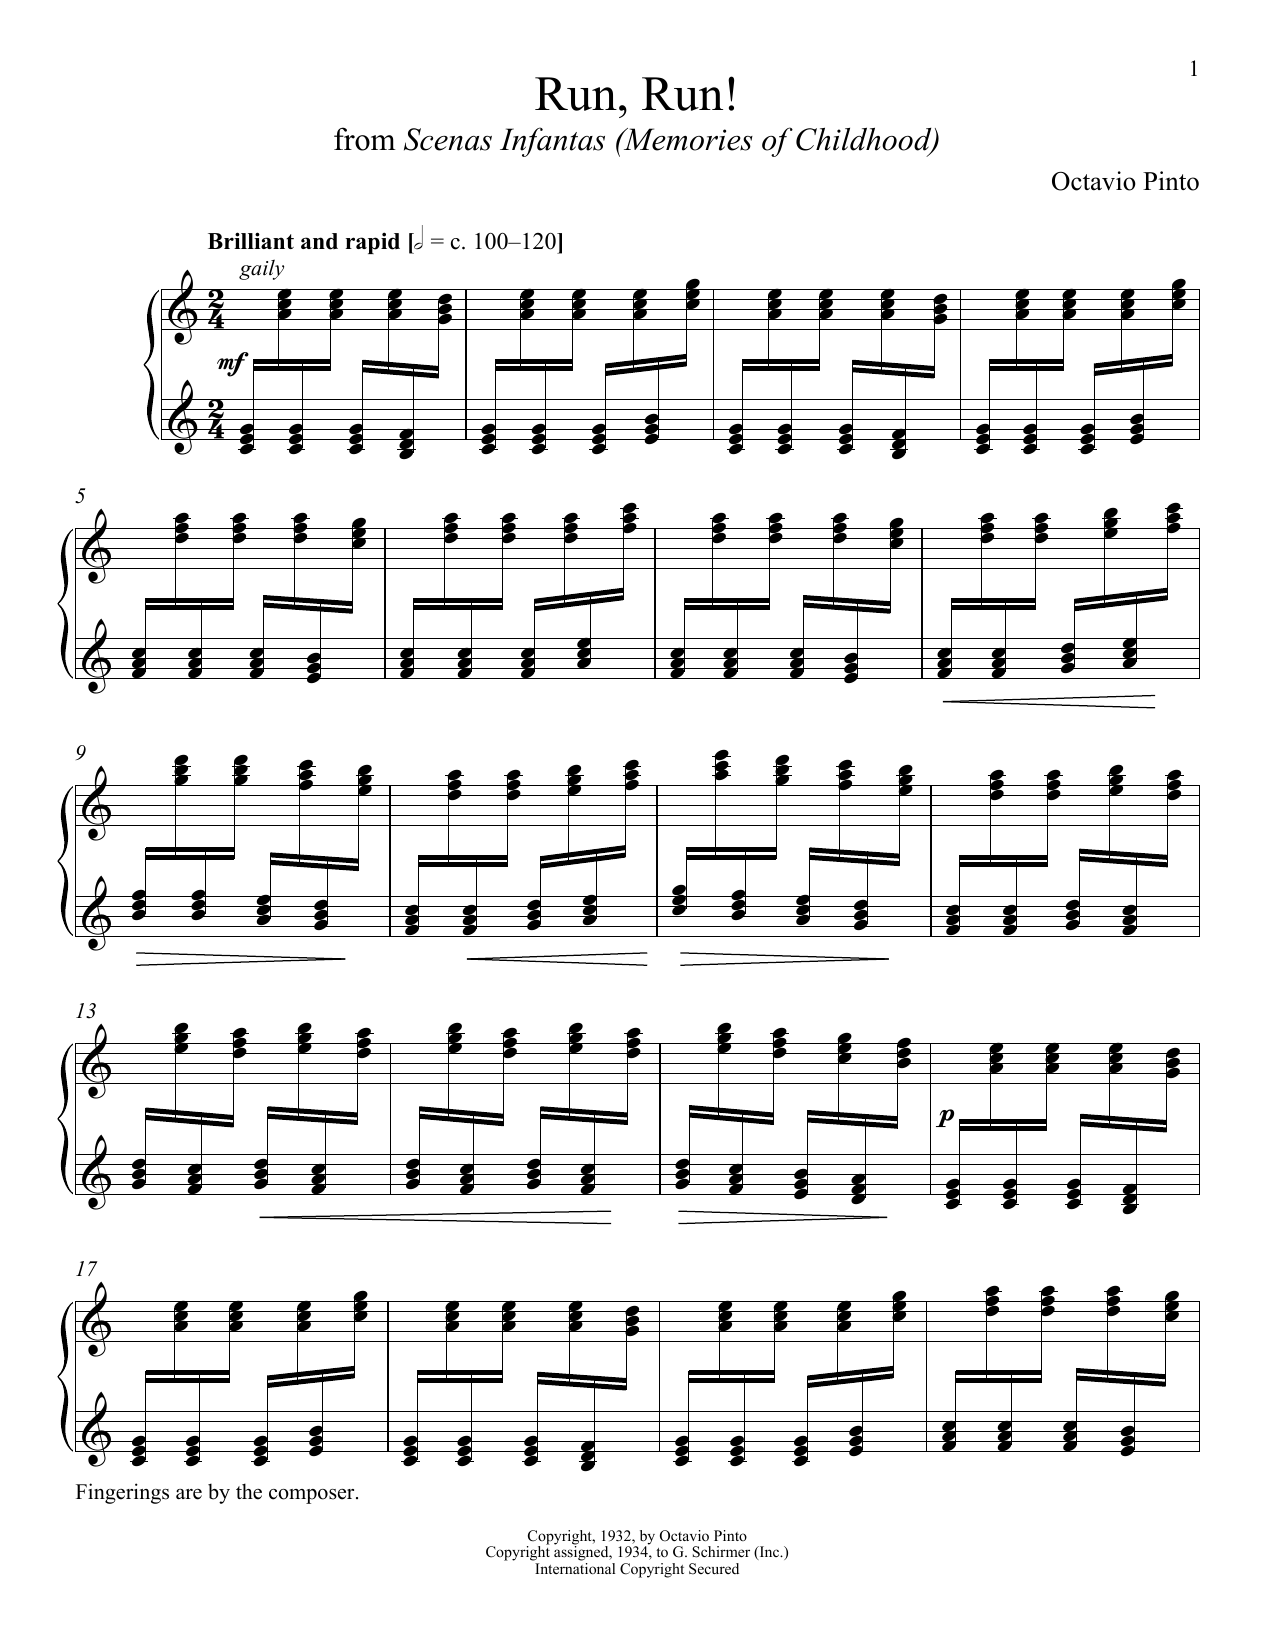 Octavio Pinto Run, Run! Sheet Music Notes & Chords for Piano - Download or Print PDF